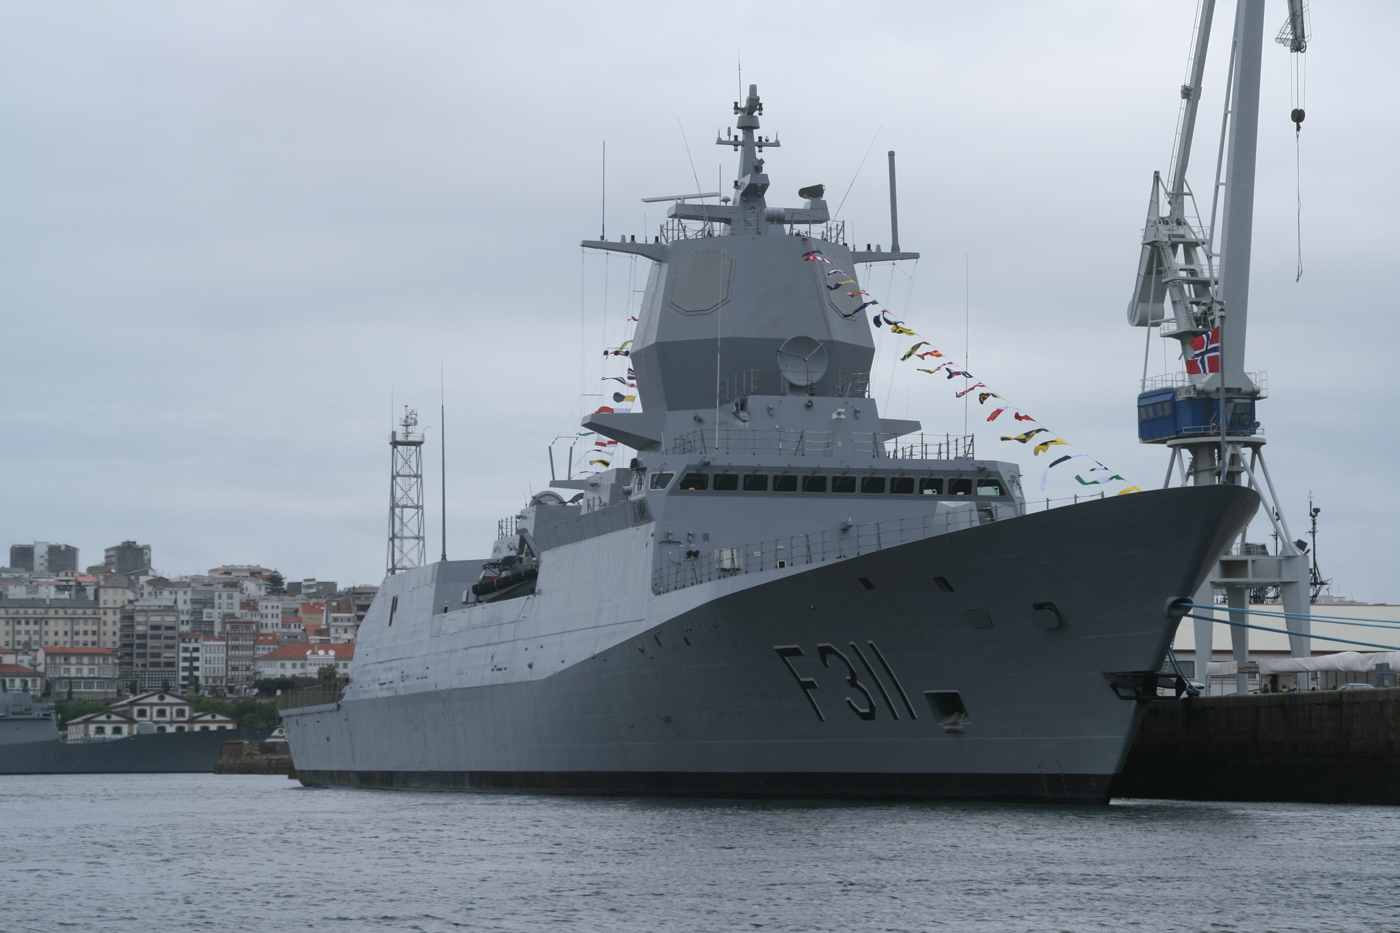 Noruega felicita a Navantia por el éxito de la tropicalización de la fragata F-311